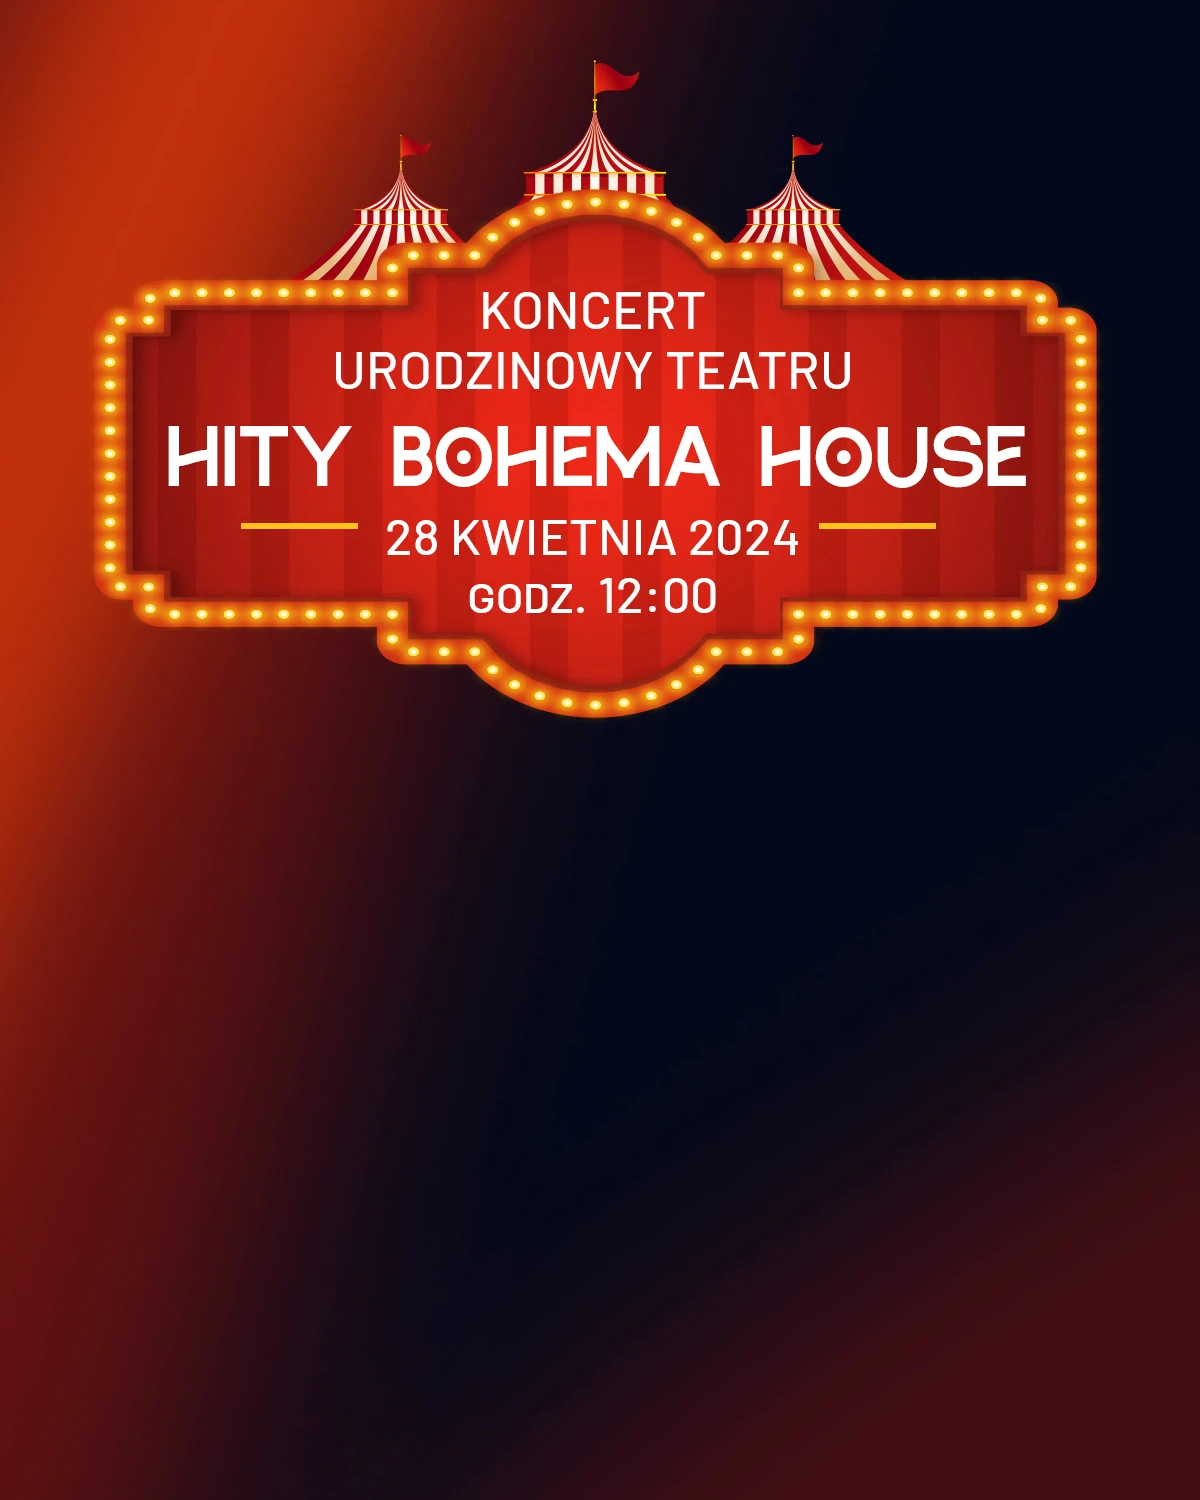 BH_hity bohema house_banner 1200x1500_20240318